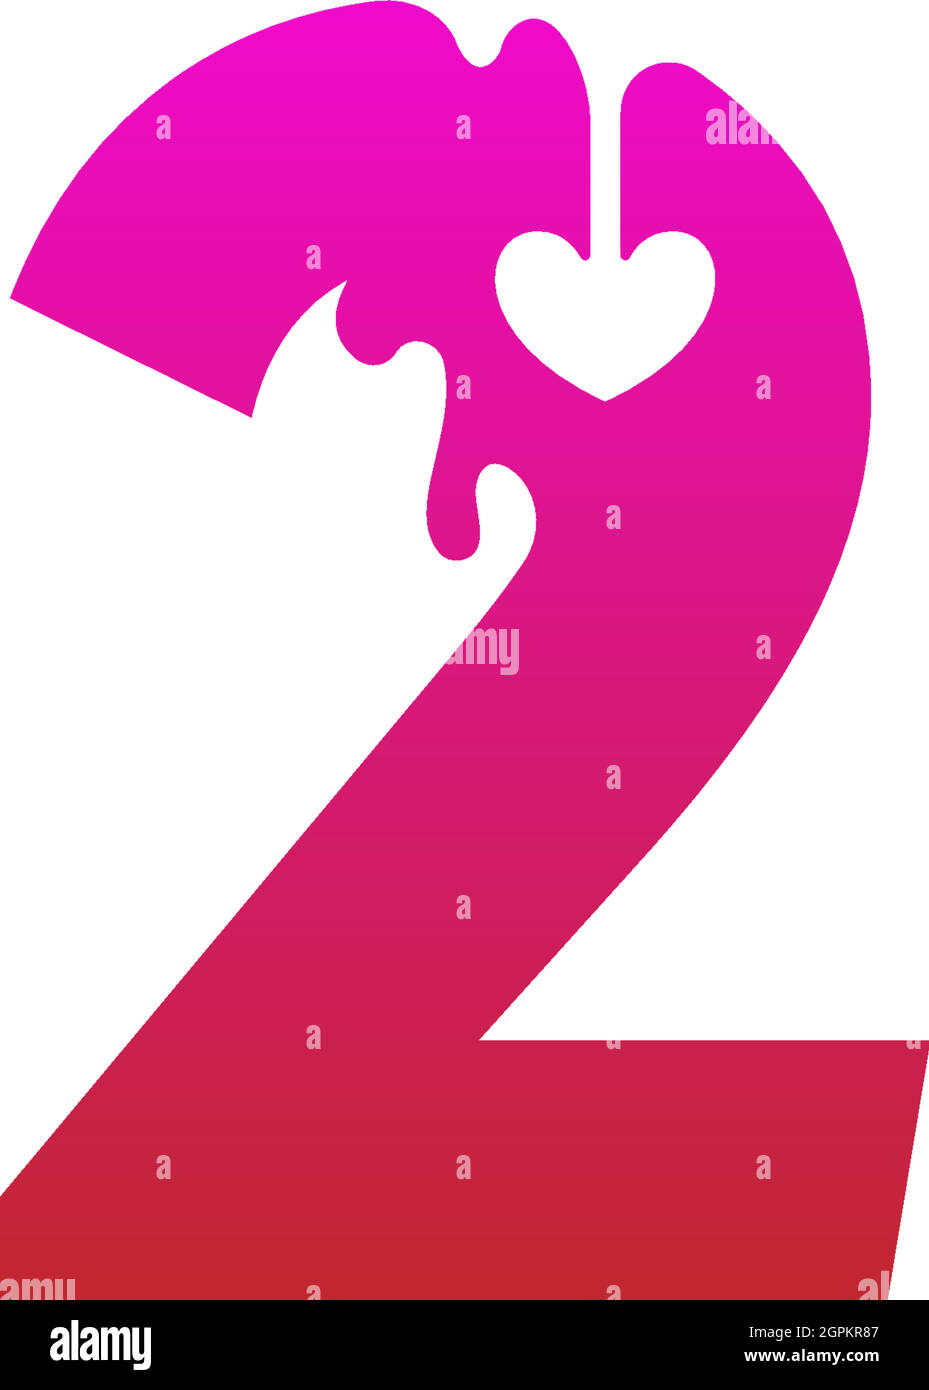 Kokoro - Heart Logo Template Stock Vector - Illustration of couple, pink:  133896584